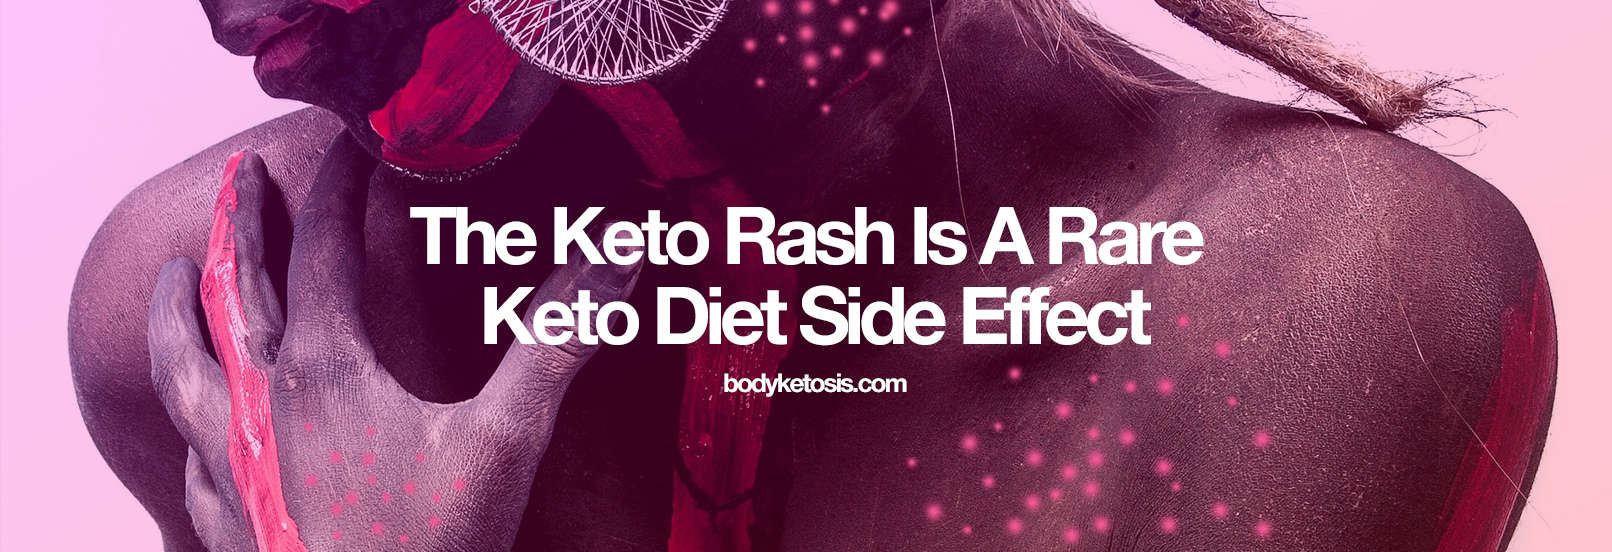 the keto rash